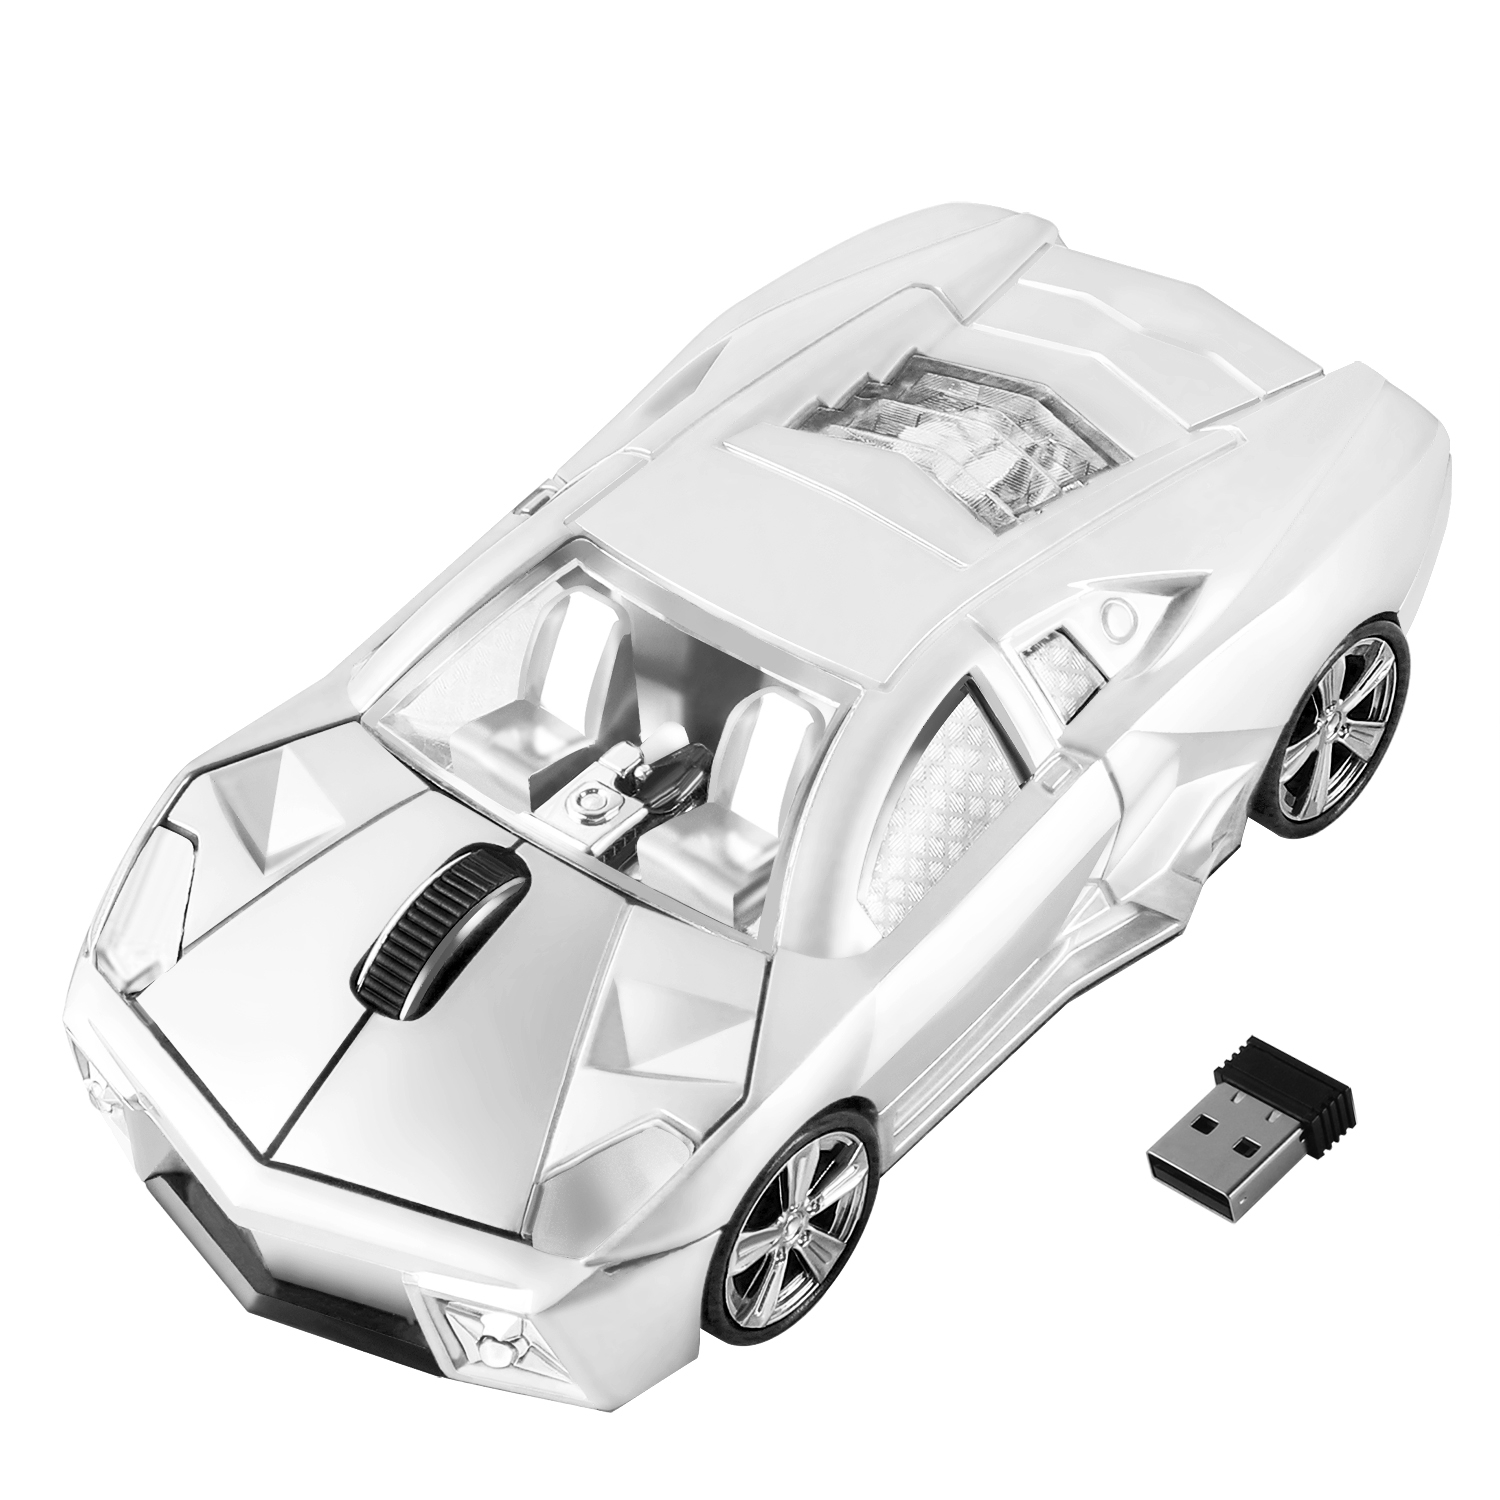 2-4G-Trådløs-Mus-Ergonomisk-Sports-Bil-Design-Gaming-Mause-1600-DPI-USB-Optisk-Børne-Gave (10)